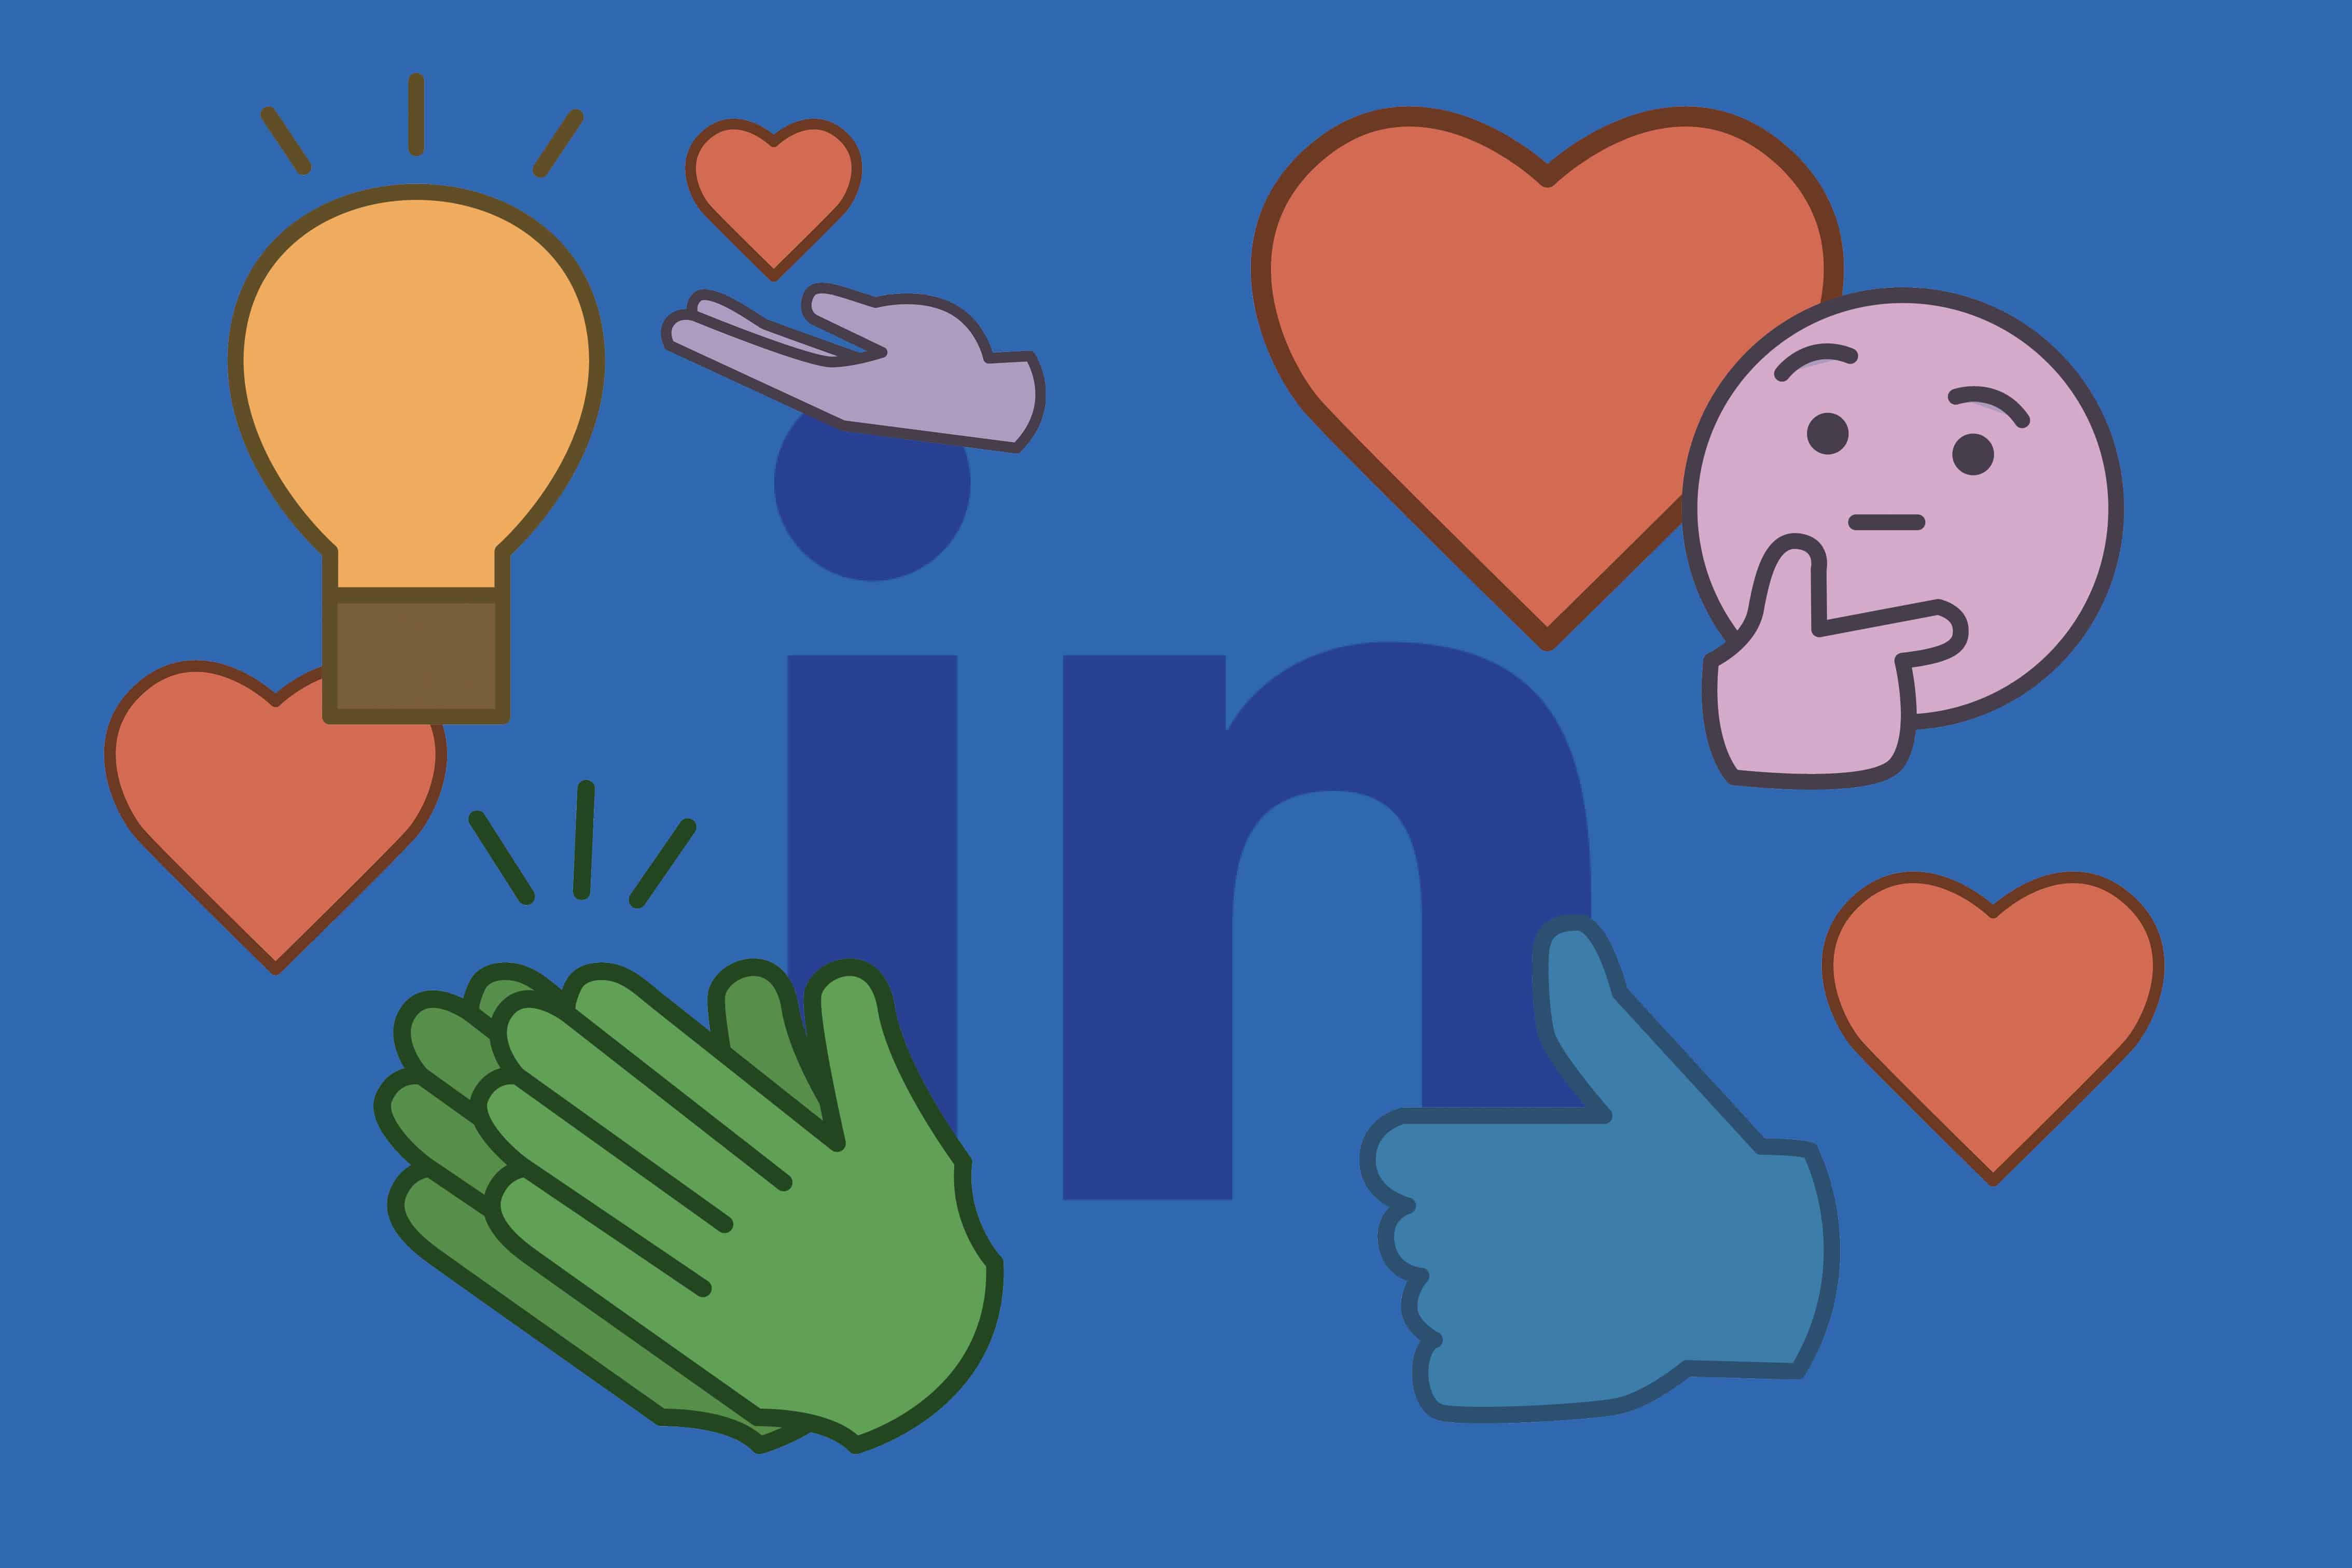 Das LinkedIn Icon umgeben von verschiedenen Reaktion-Emojis auf blauem Grund